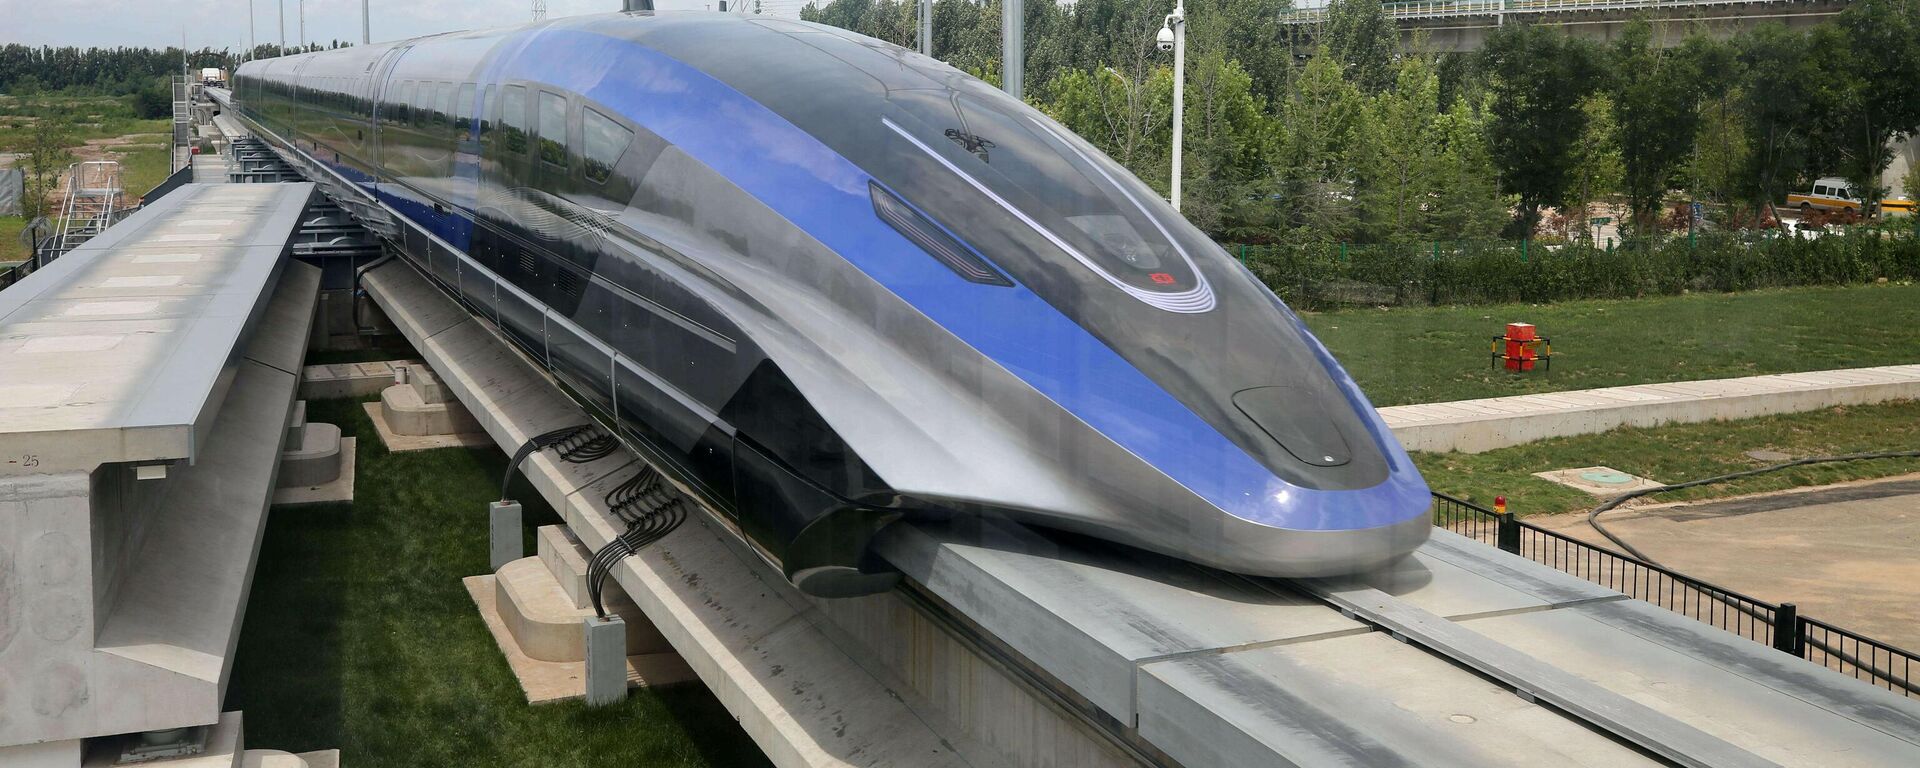 Кинески нови брзи воз достиже брзину од 600 километара на сат - Sputnik Србија, 1920, 20.07.2021